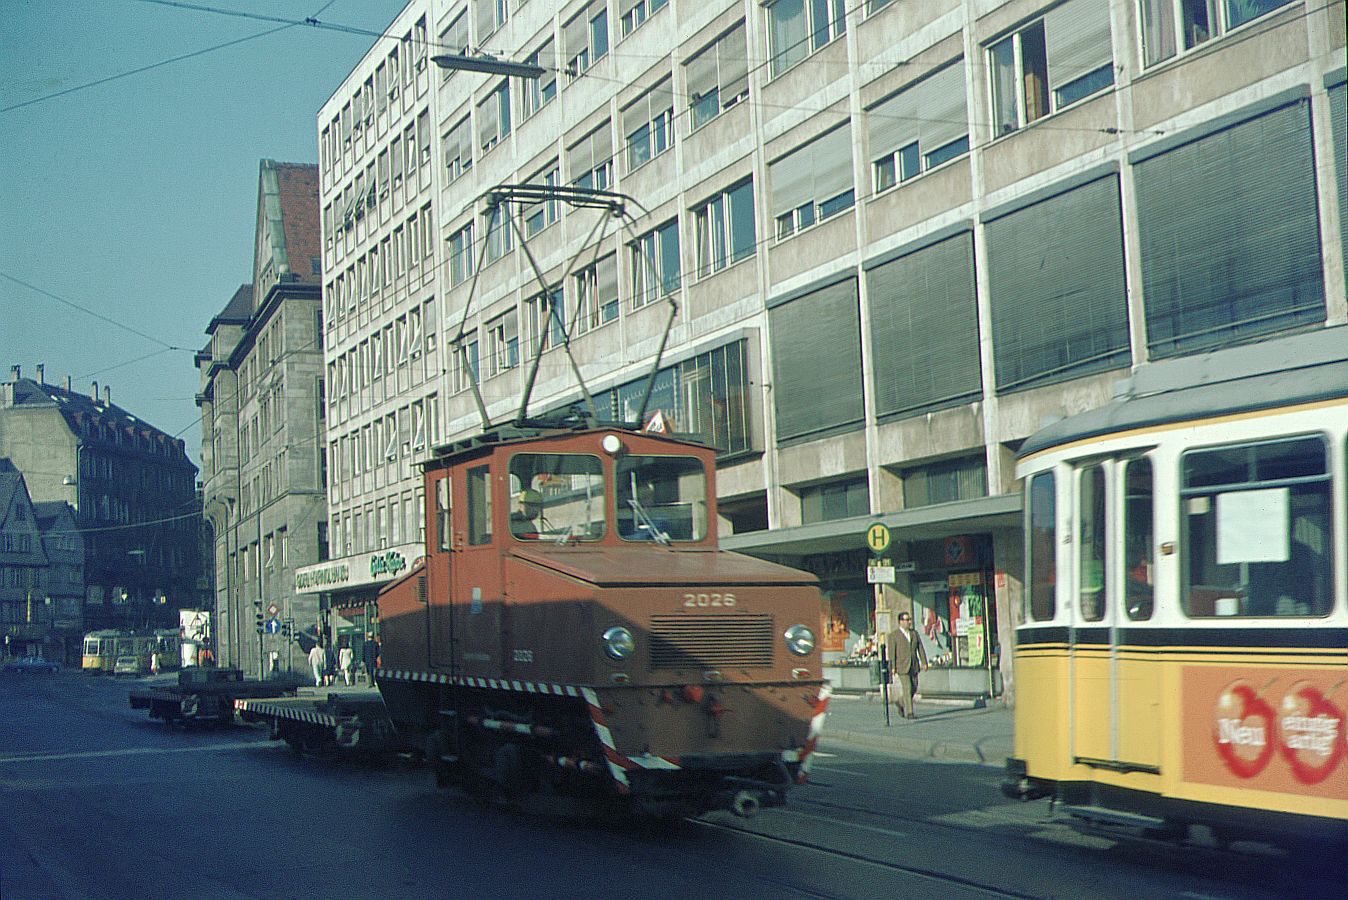 SSB Stuttgart__Arbeitsfahrzeuge der SSB in den 70er und 80er Jahren. A-Lok 2026 [ME/BBC 1946; +1977] mit 2 Flachwagen in der Eberhardstr. vor der Seitenfront des Rathauses.__1970 